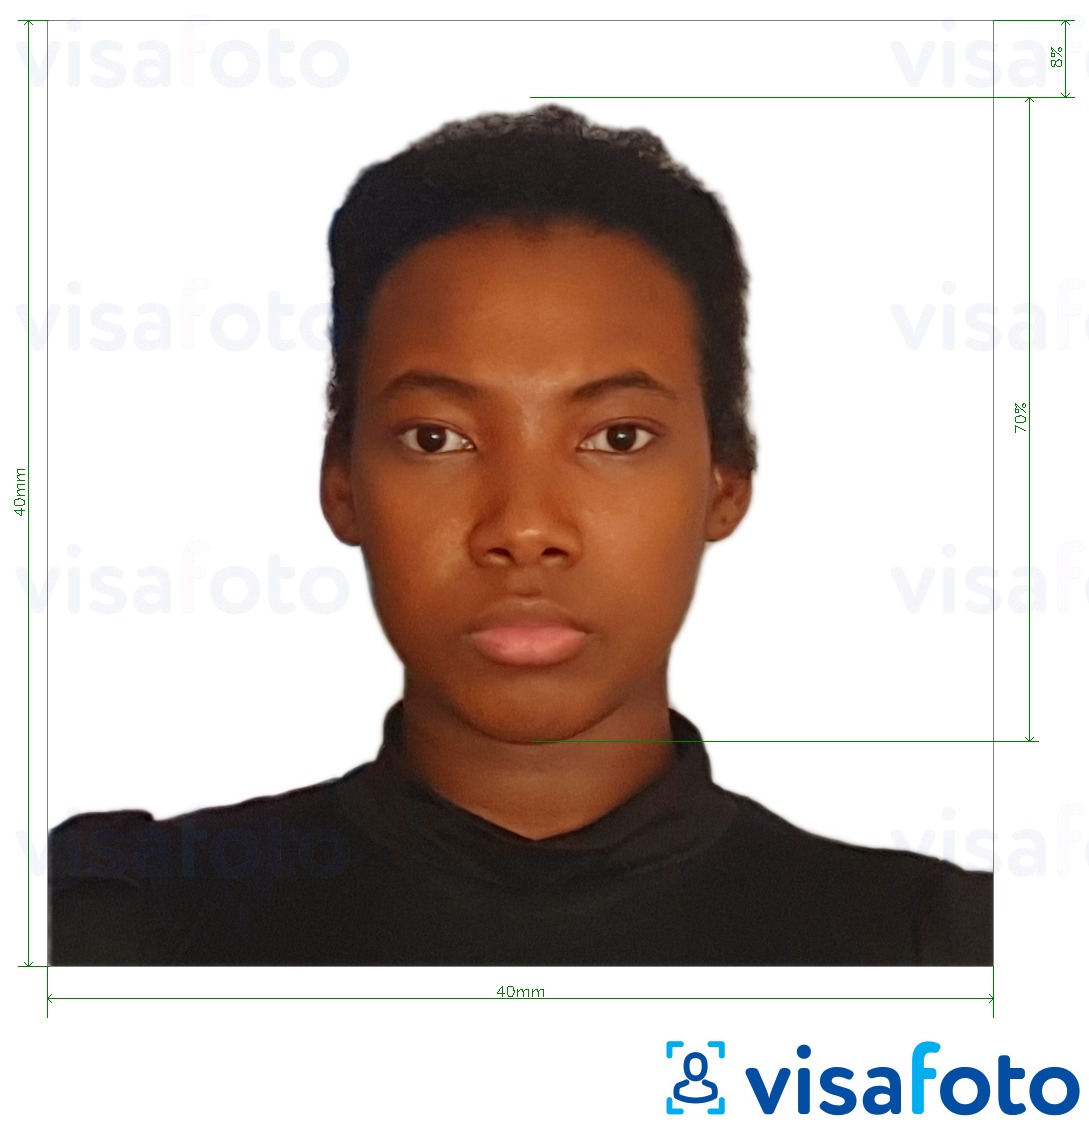 דוגמא לתמונה על תעודת זהות מדגסקר 40x40 מ